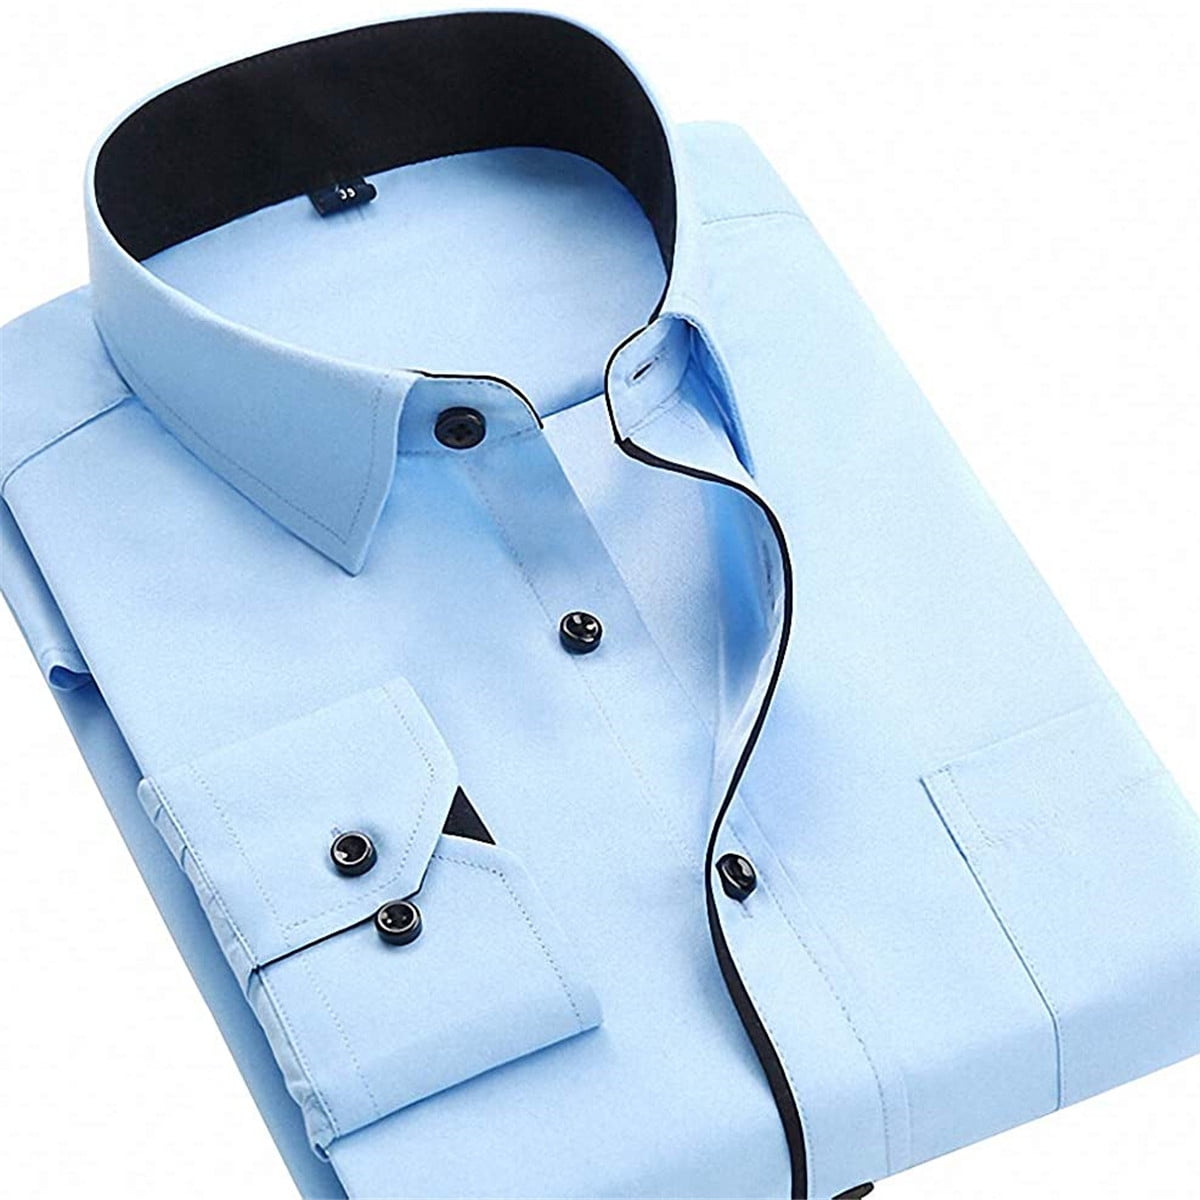 Calsunbaby Mens Long Sleeve Tops Business Work Formal Dress Shirt Light ...